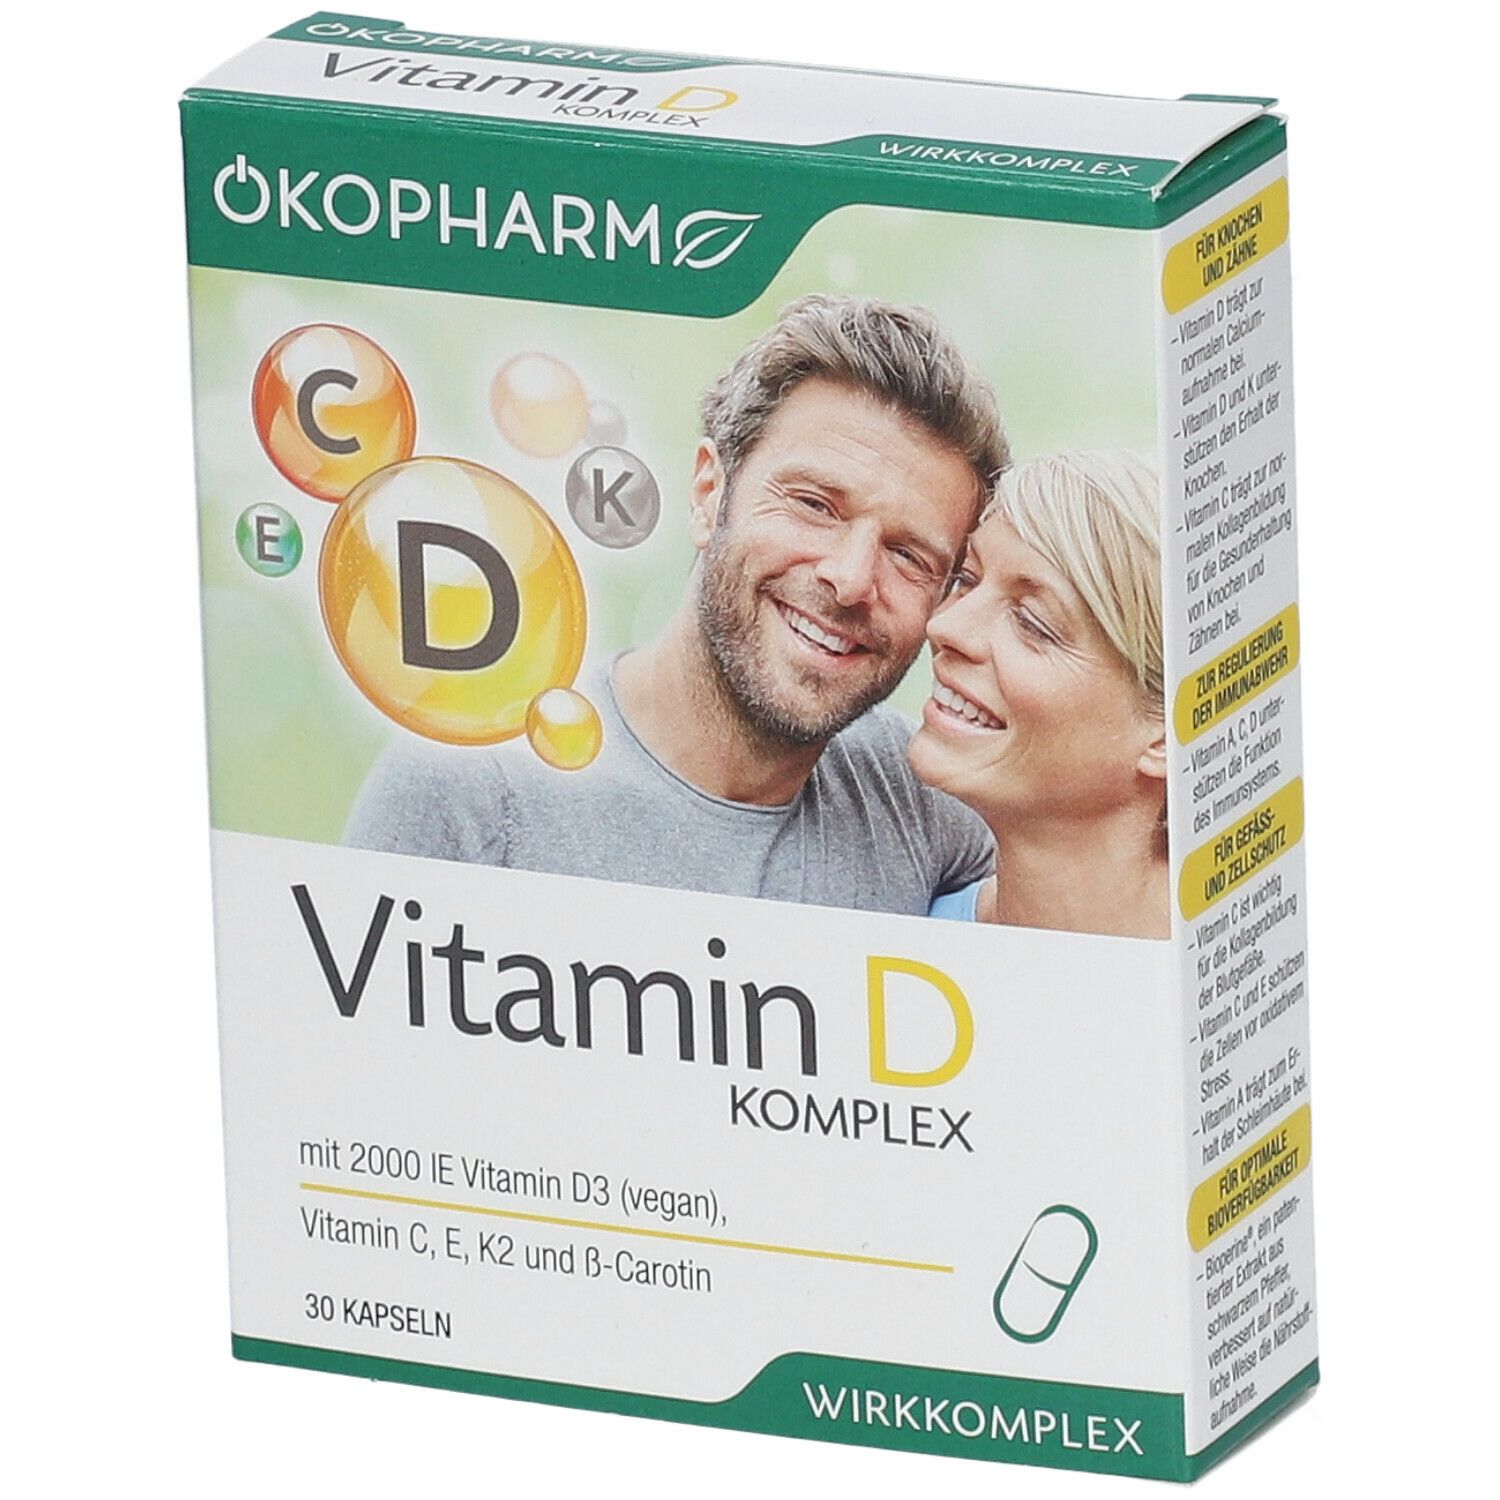 ÖKOPHARM44® Vitamin D Komplex